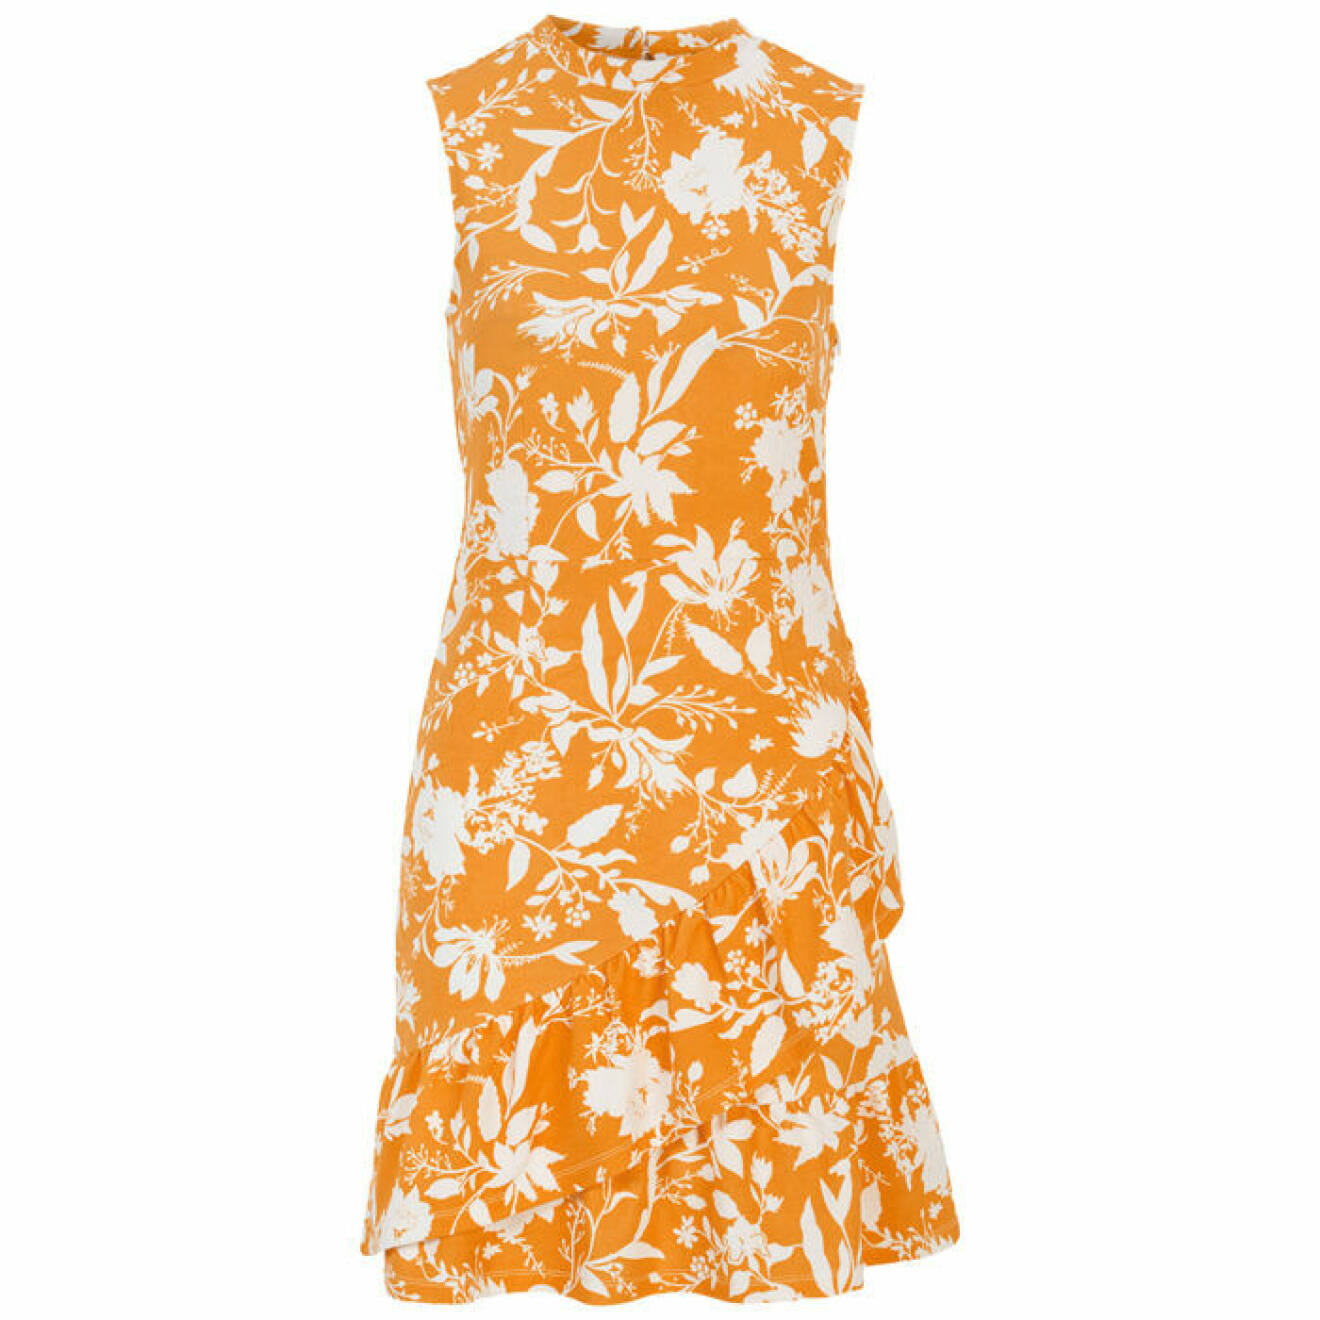 Gul/orange klänning med vita blommor och blad